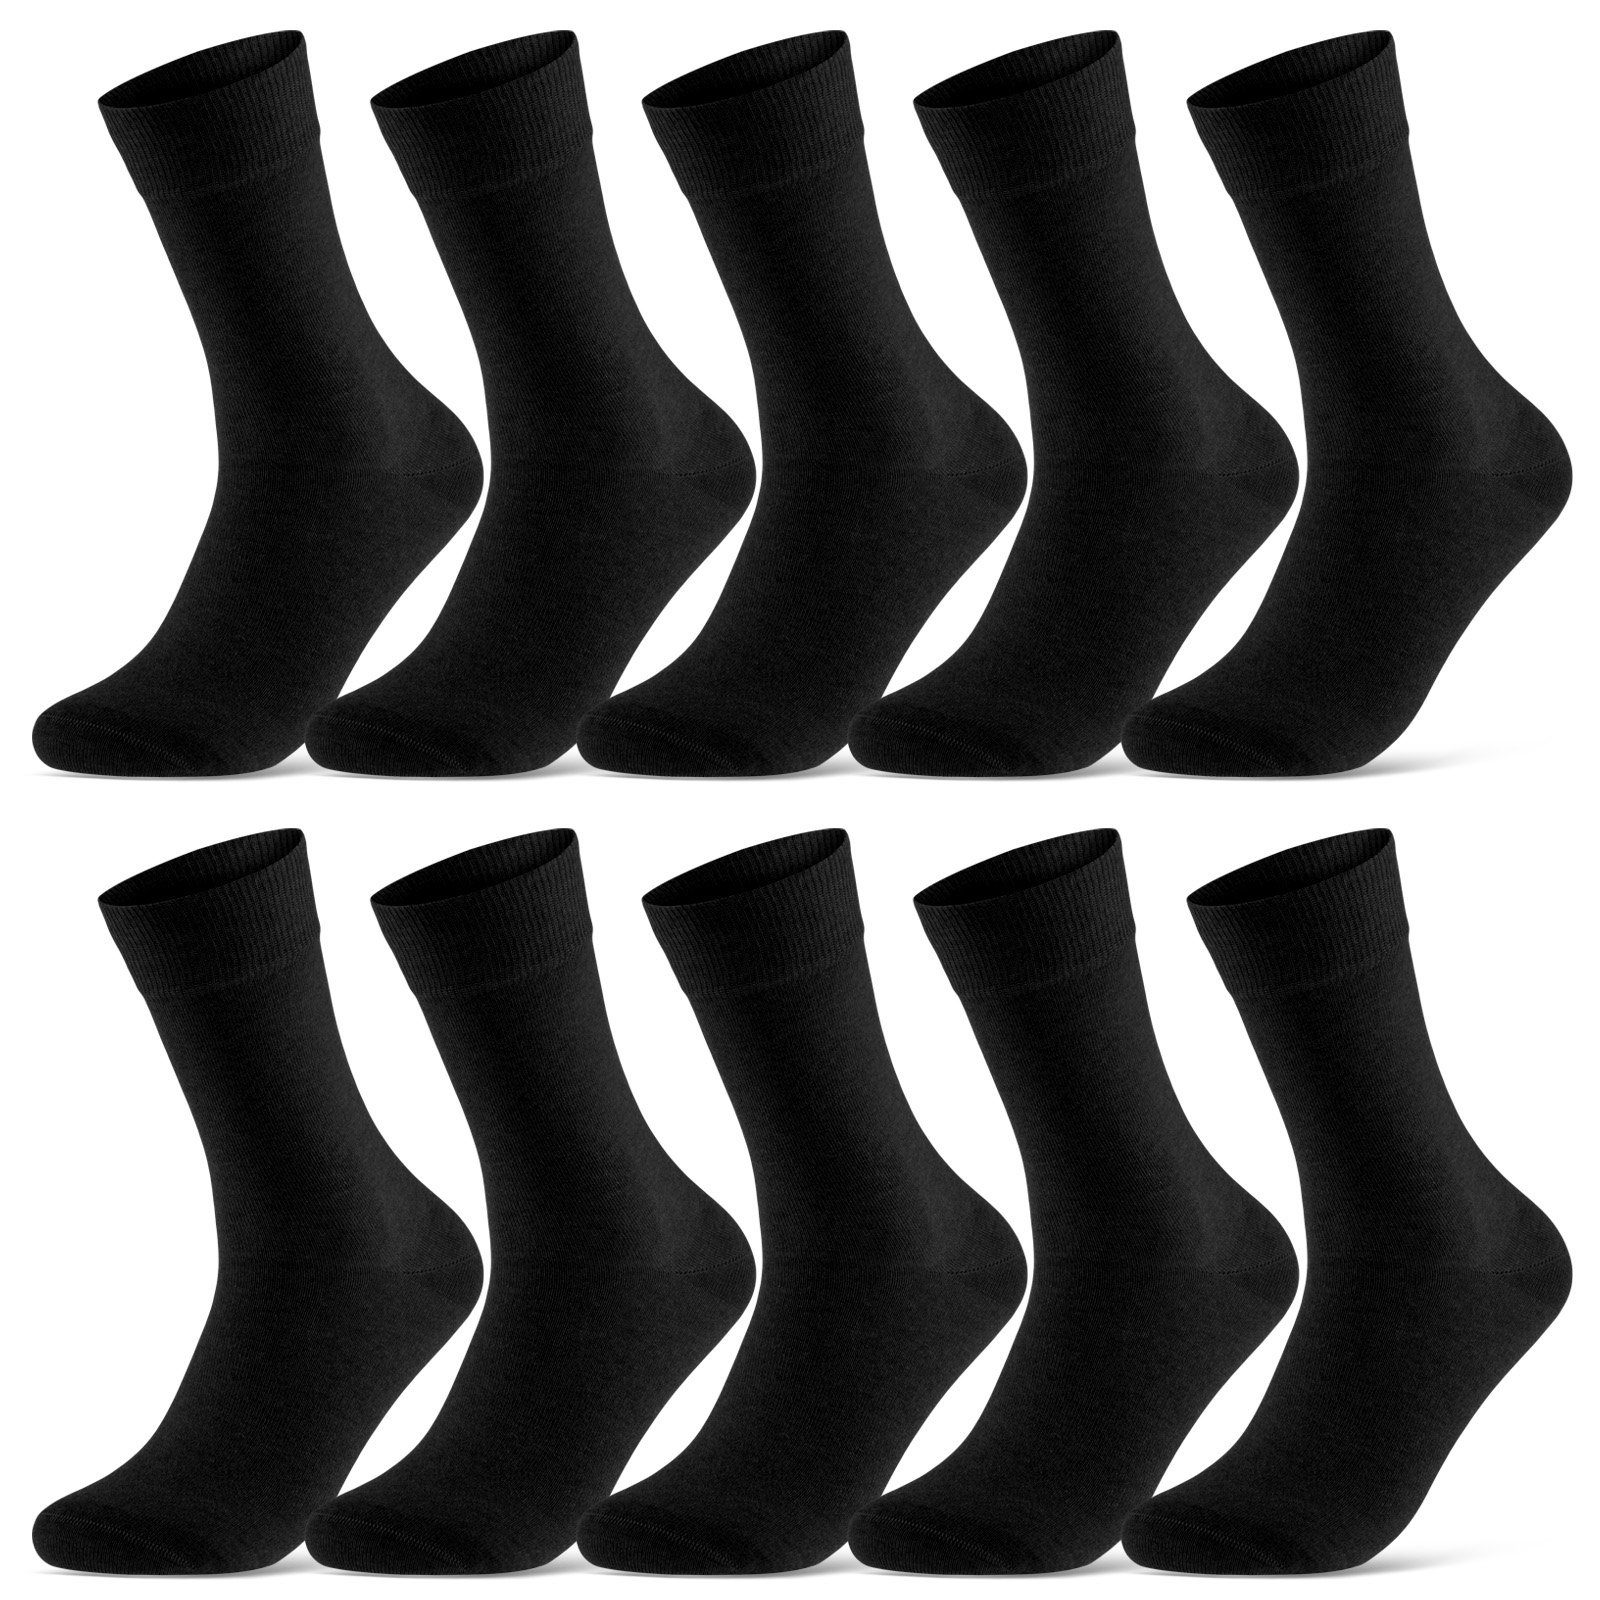 sockenkauf24 Socken 10 Paar Damen & Herren Socken Business Socken Baumwolle (Schwarz, 39-42) mit Komfortbund (Basicline) - 70201T WP | Lange Socken